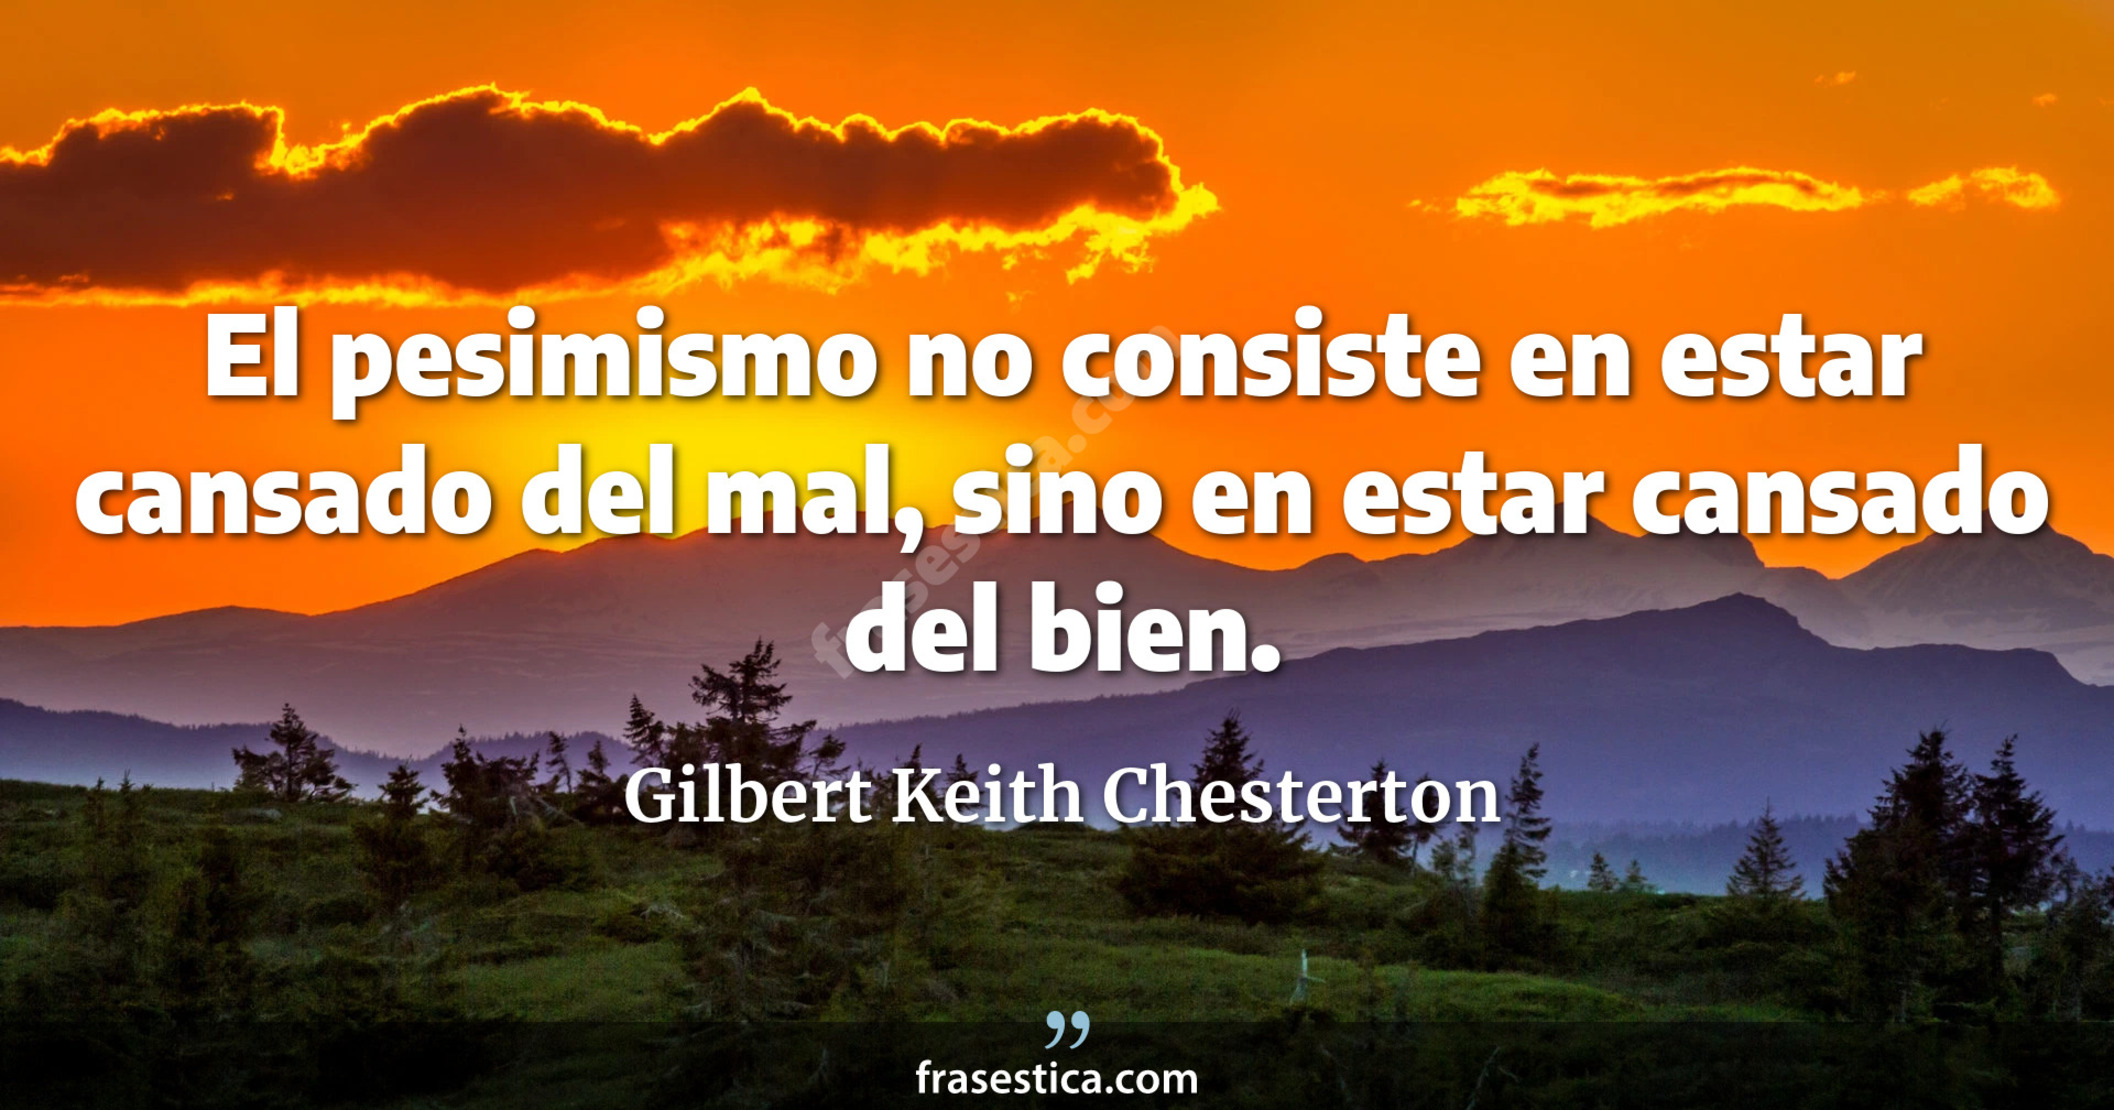 El pesimismo no consiste en estar cansado del mal, sino en estar cansado del bien. - Gilbert Keith Chesterton